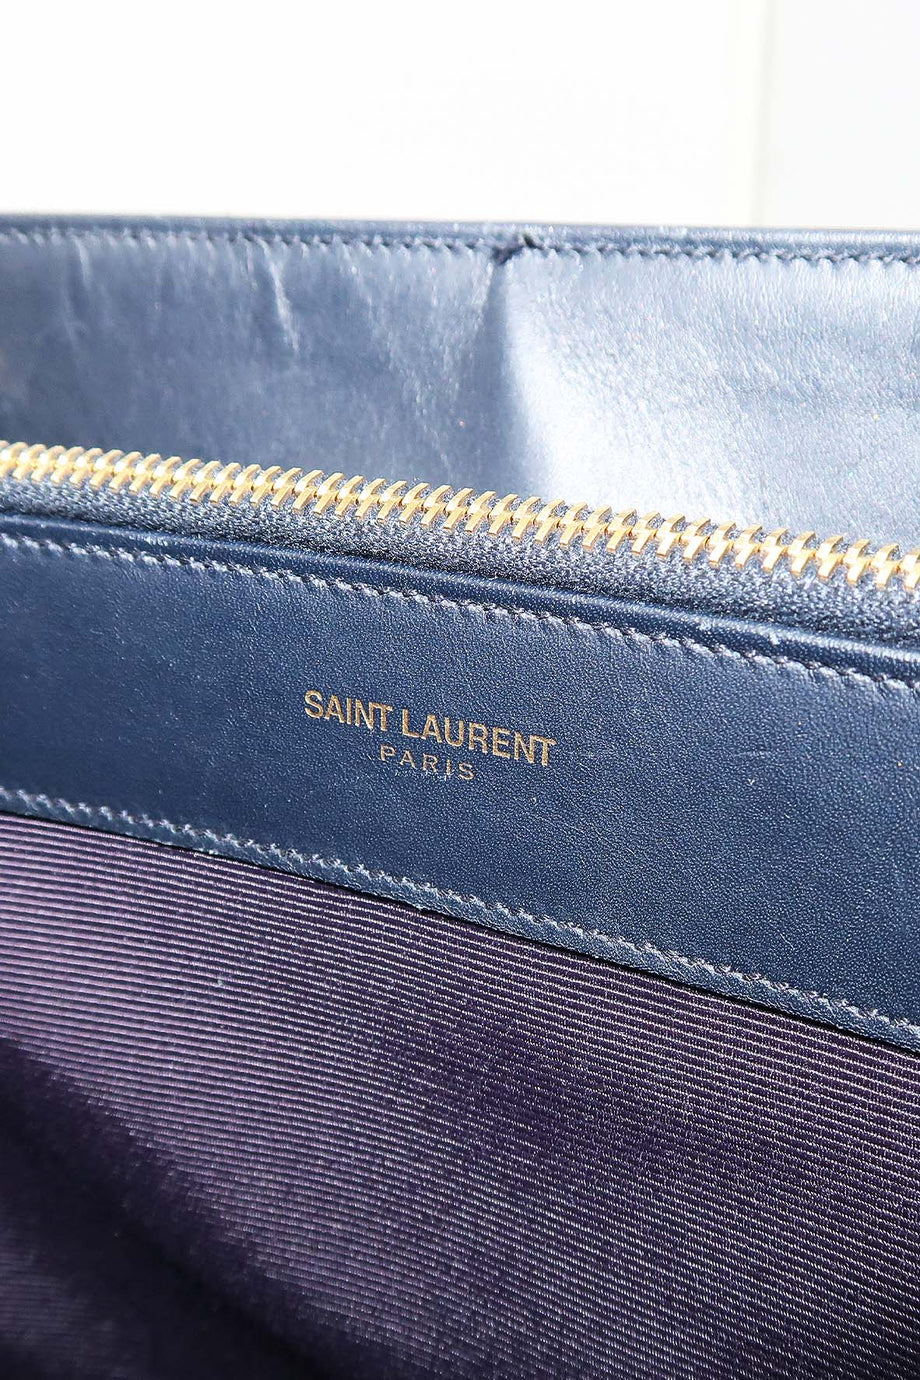 Saint Laurent Cassandre Shopper Tote – AMUSED Co